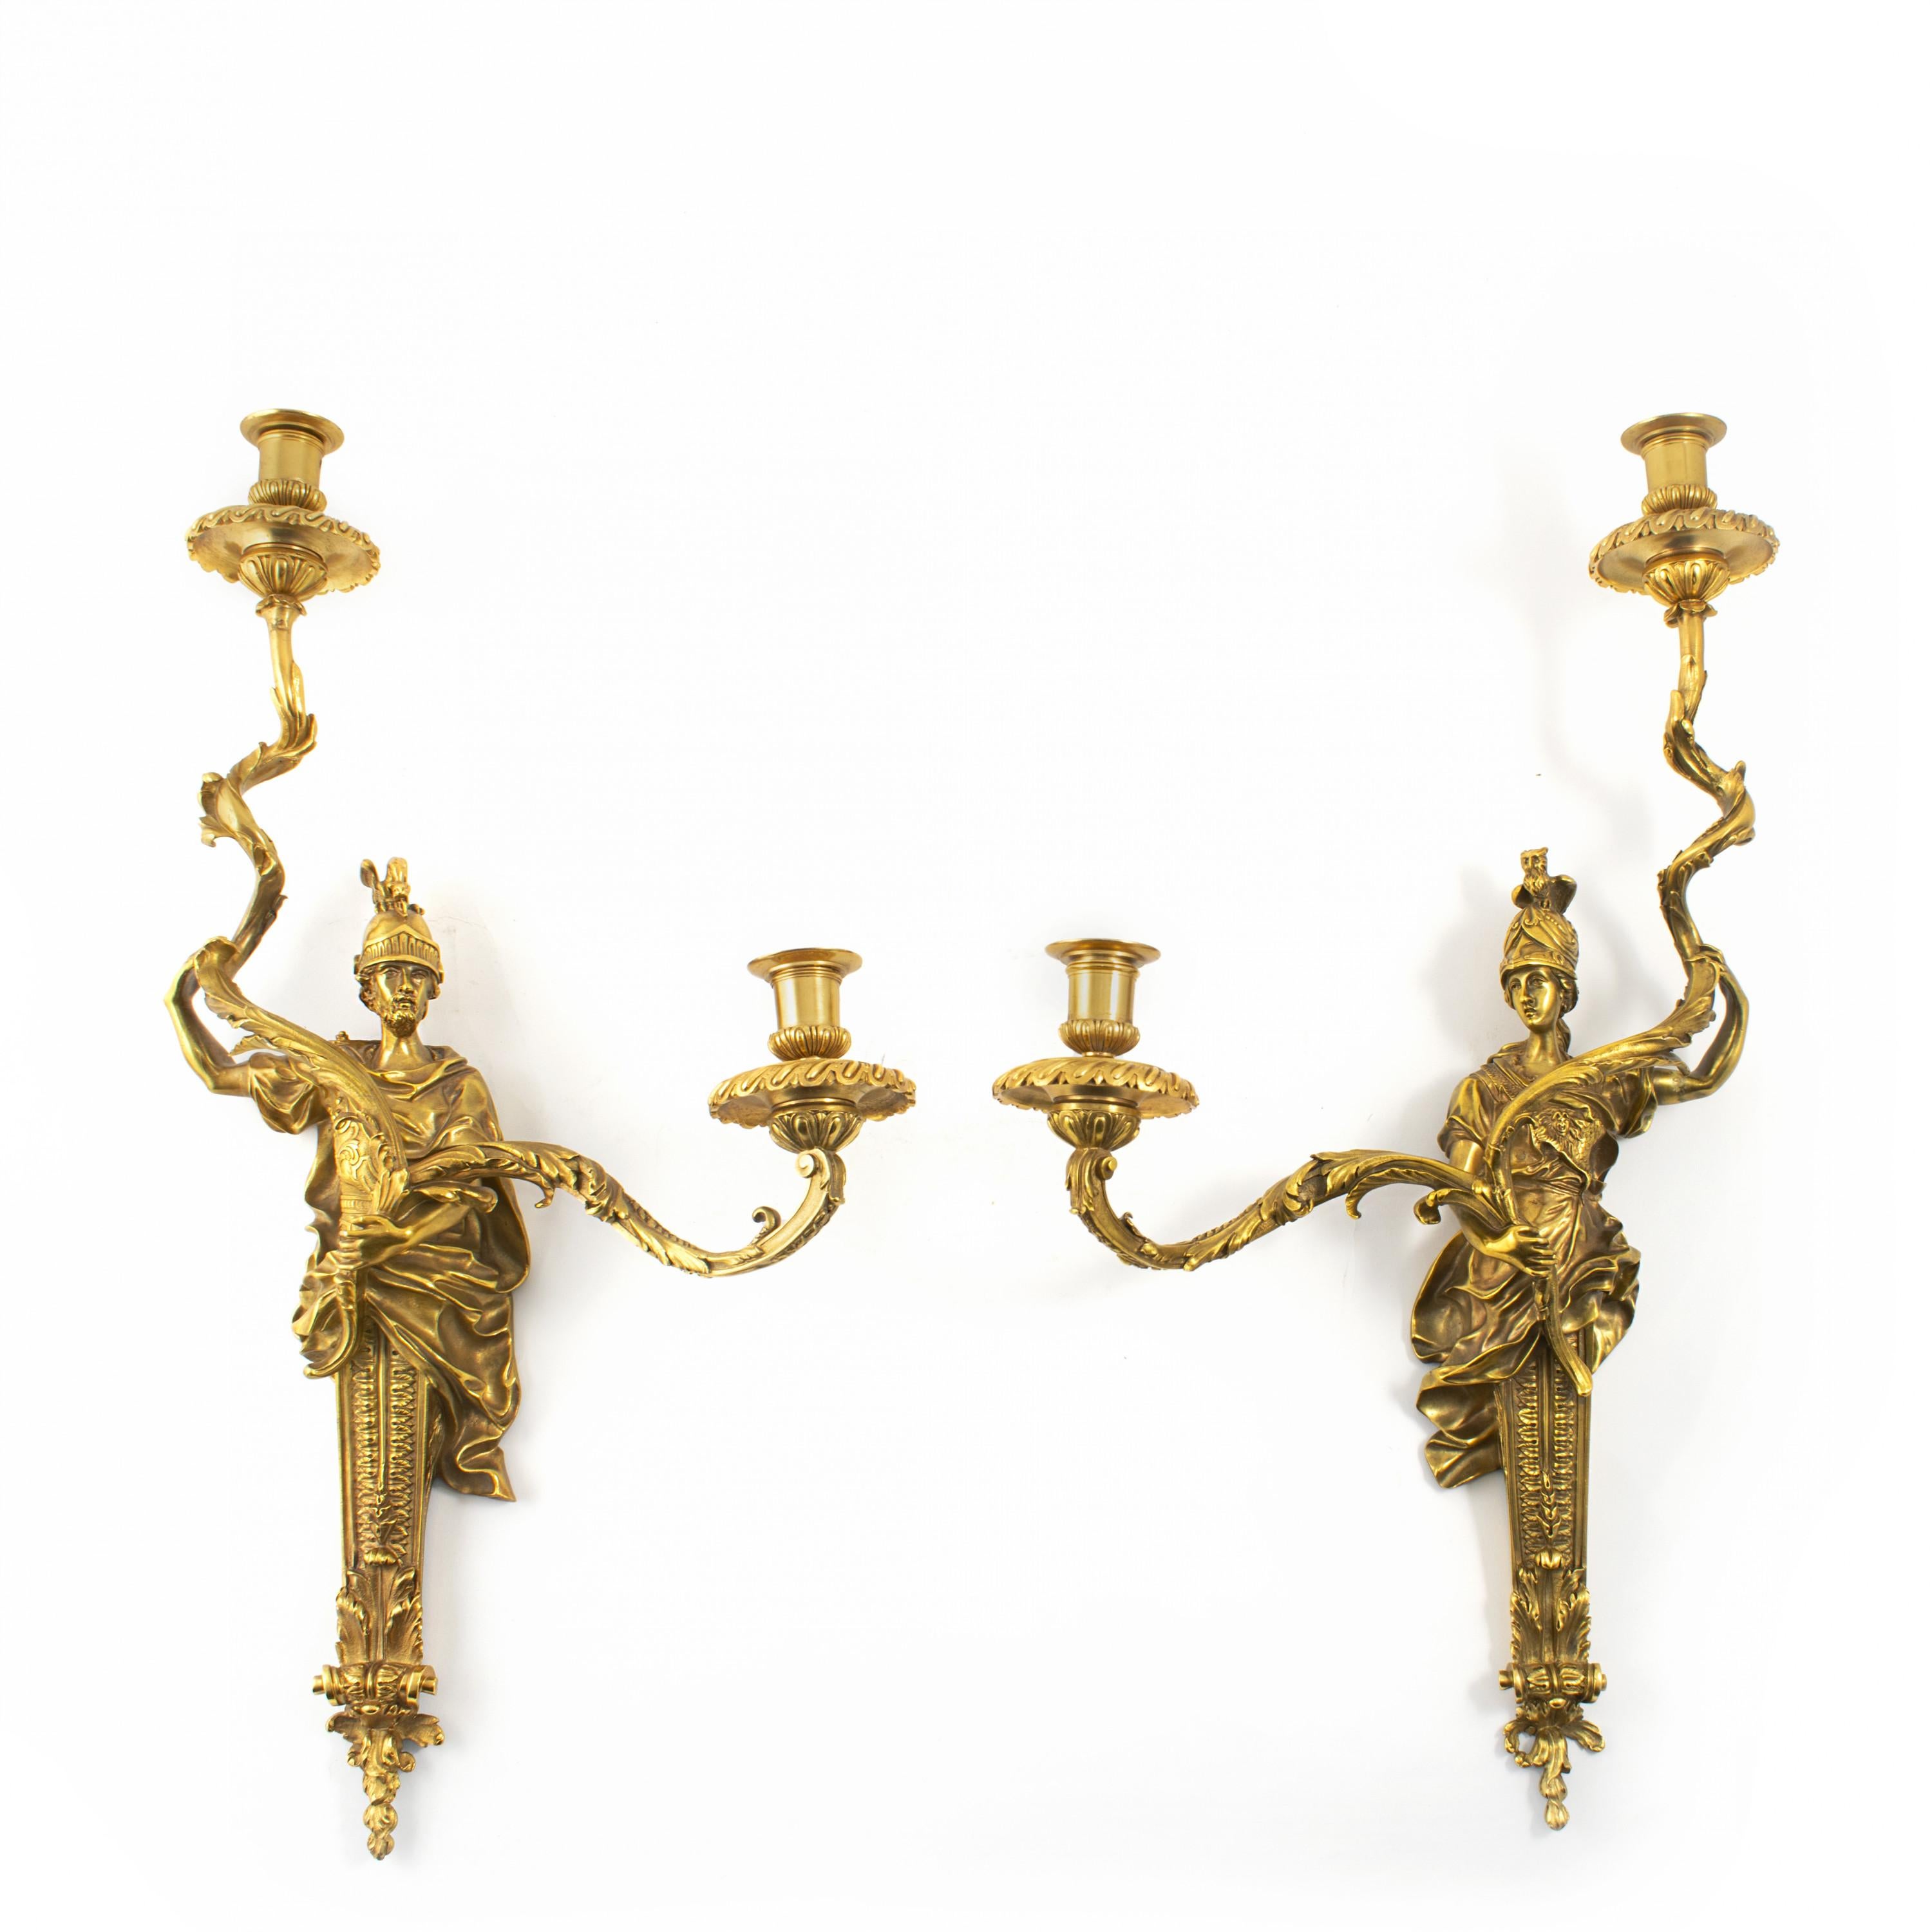 Ein raffinierter Satz von vier französischen Wandlampen aus vergoldeter Bronze im Louis-XVI-Stil.
Hergestellt in Frankreich im späten 19. Jahrhundert von Henri Vian.
Sehr hohe Qualität.

Jede ist mit zwei Leuchten ausgestattet, die von einer